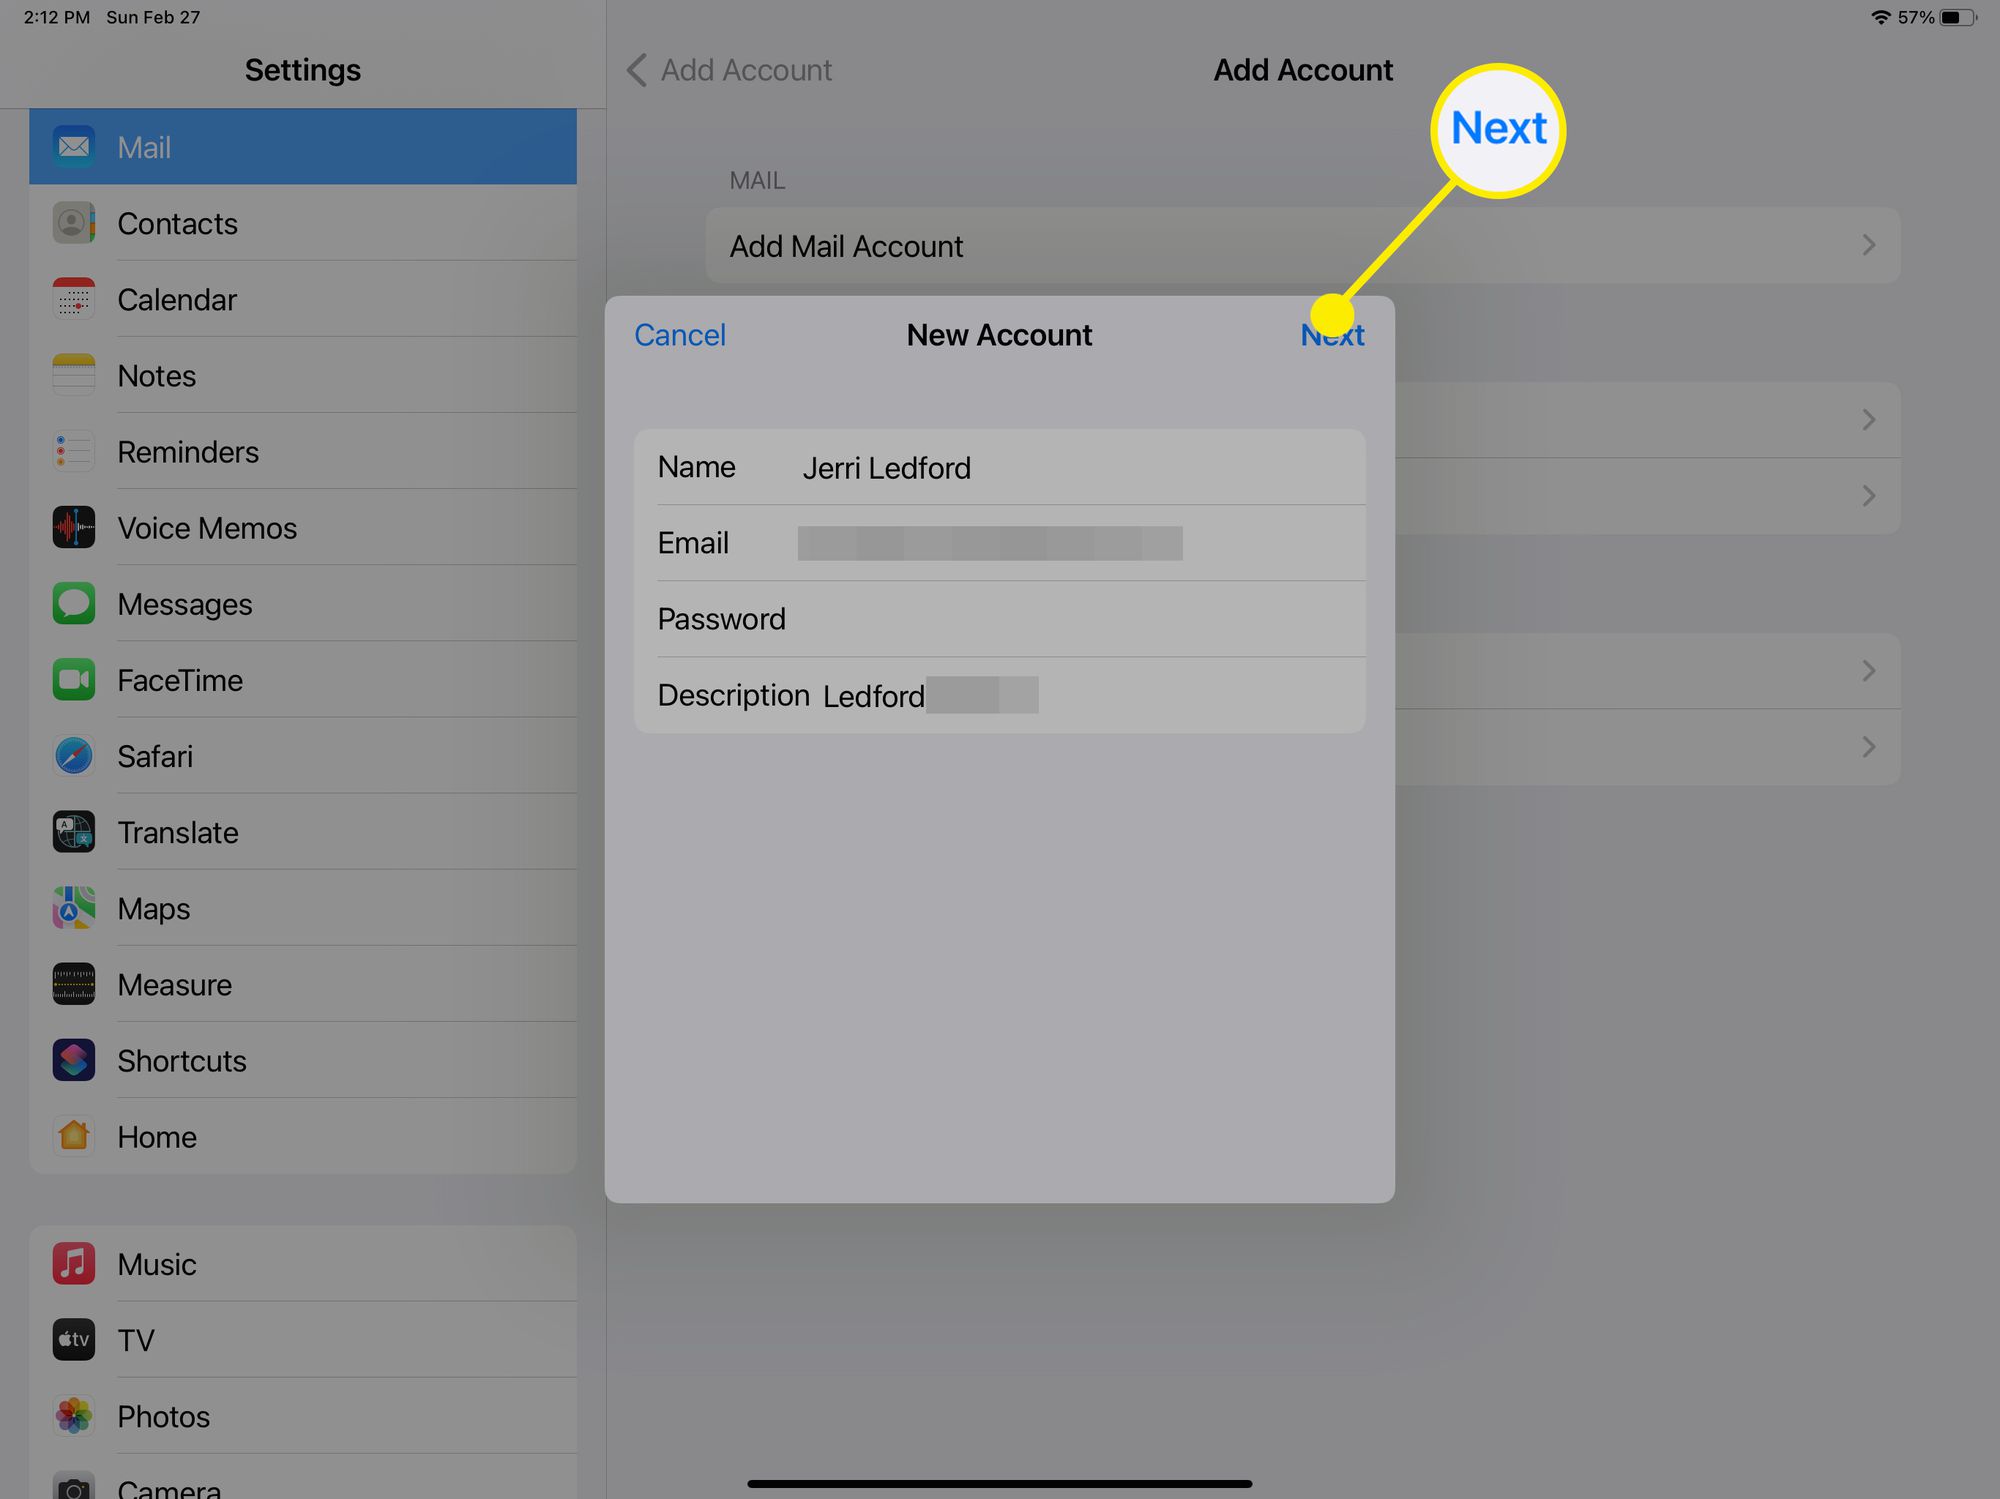 Πληροφορίες νέου λογαριασμού κατά την προσθήκη νέου λογαριασμού email στο iPad.